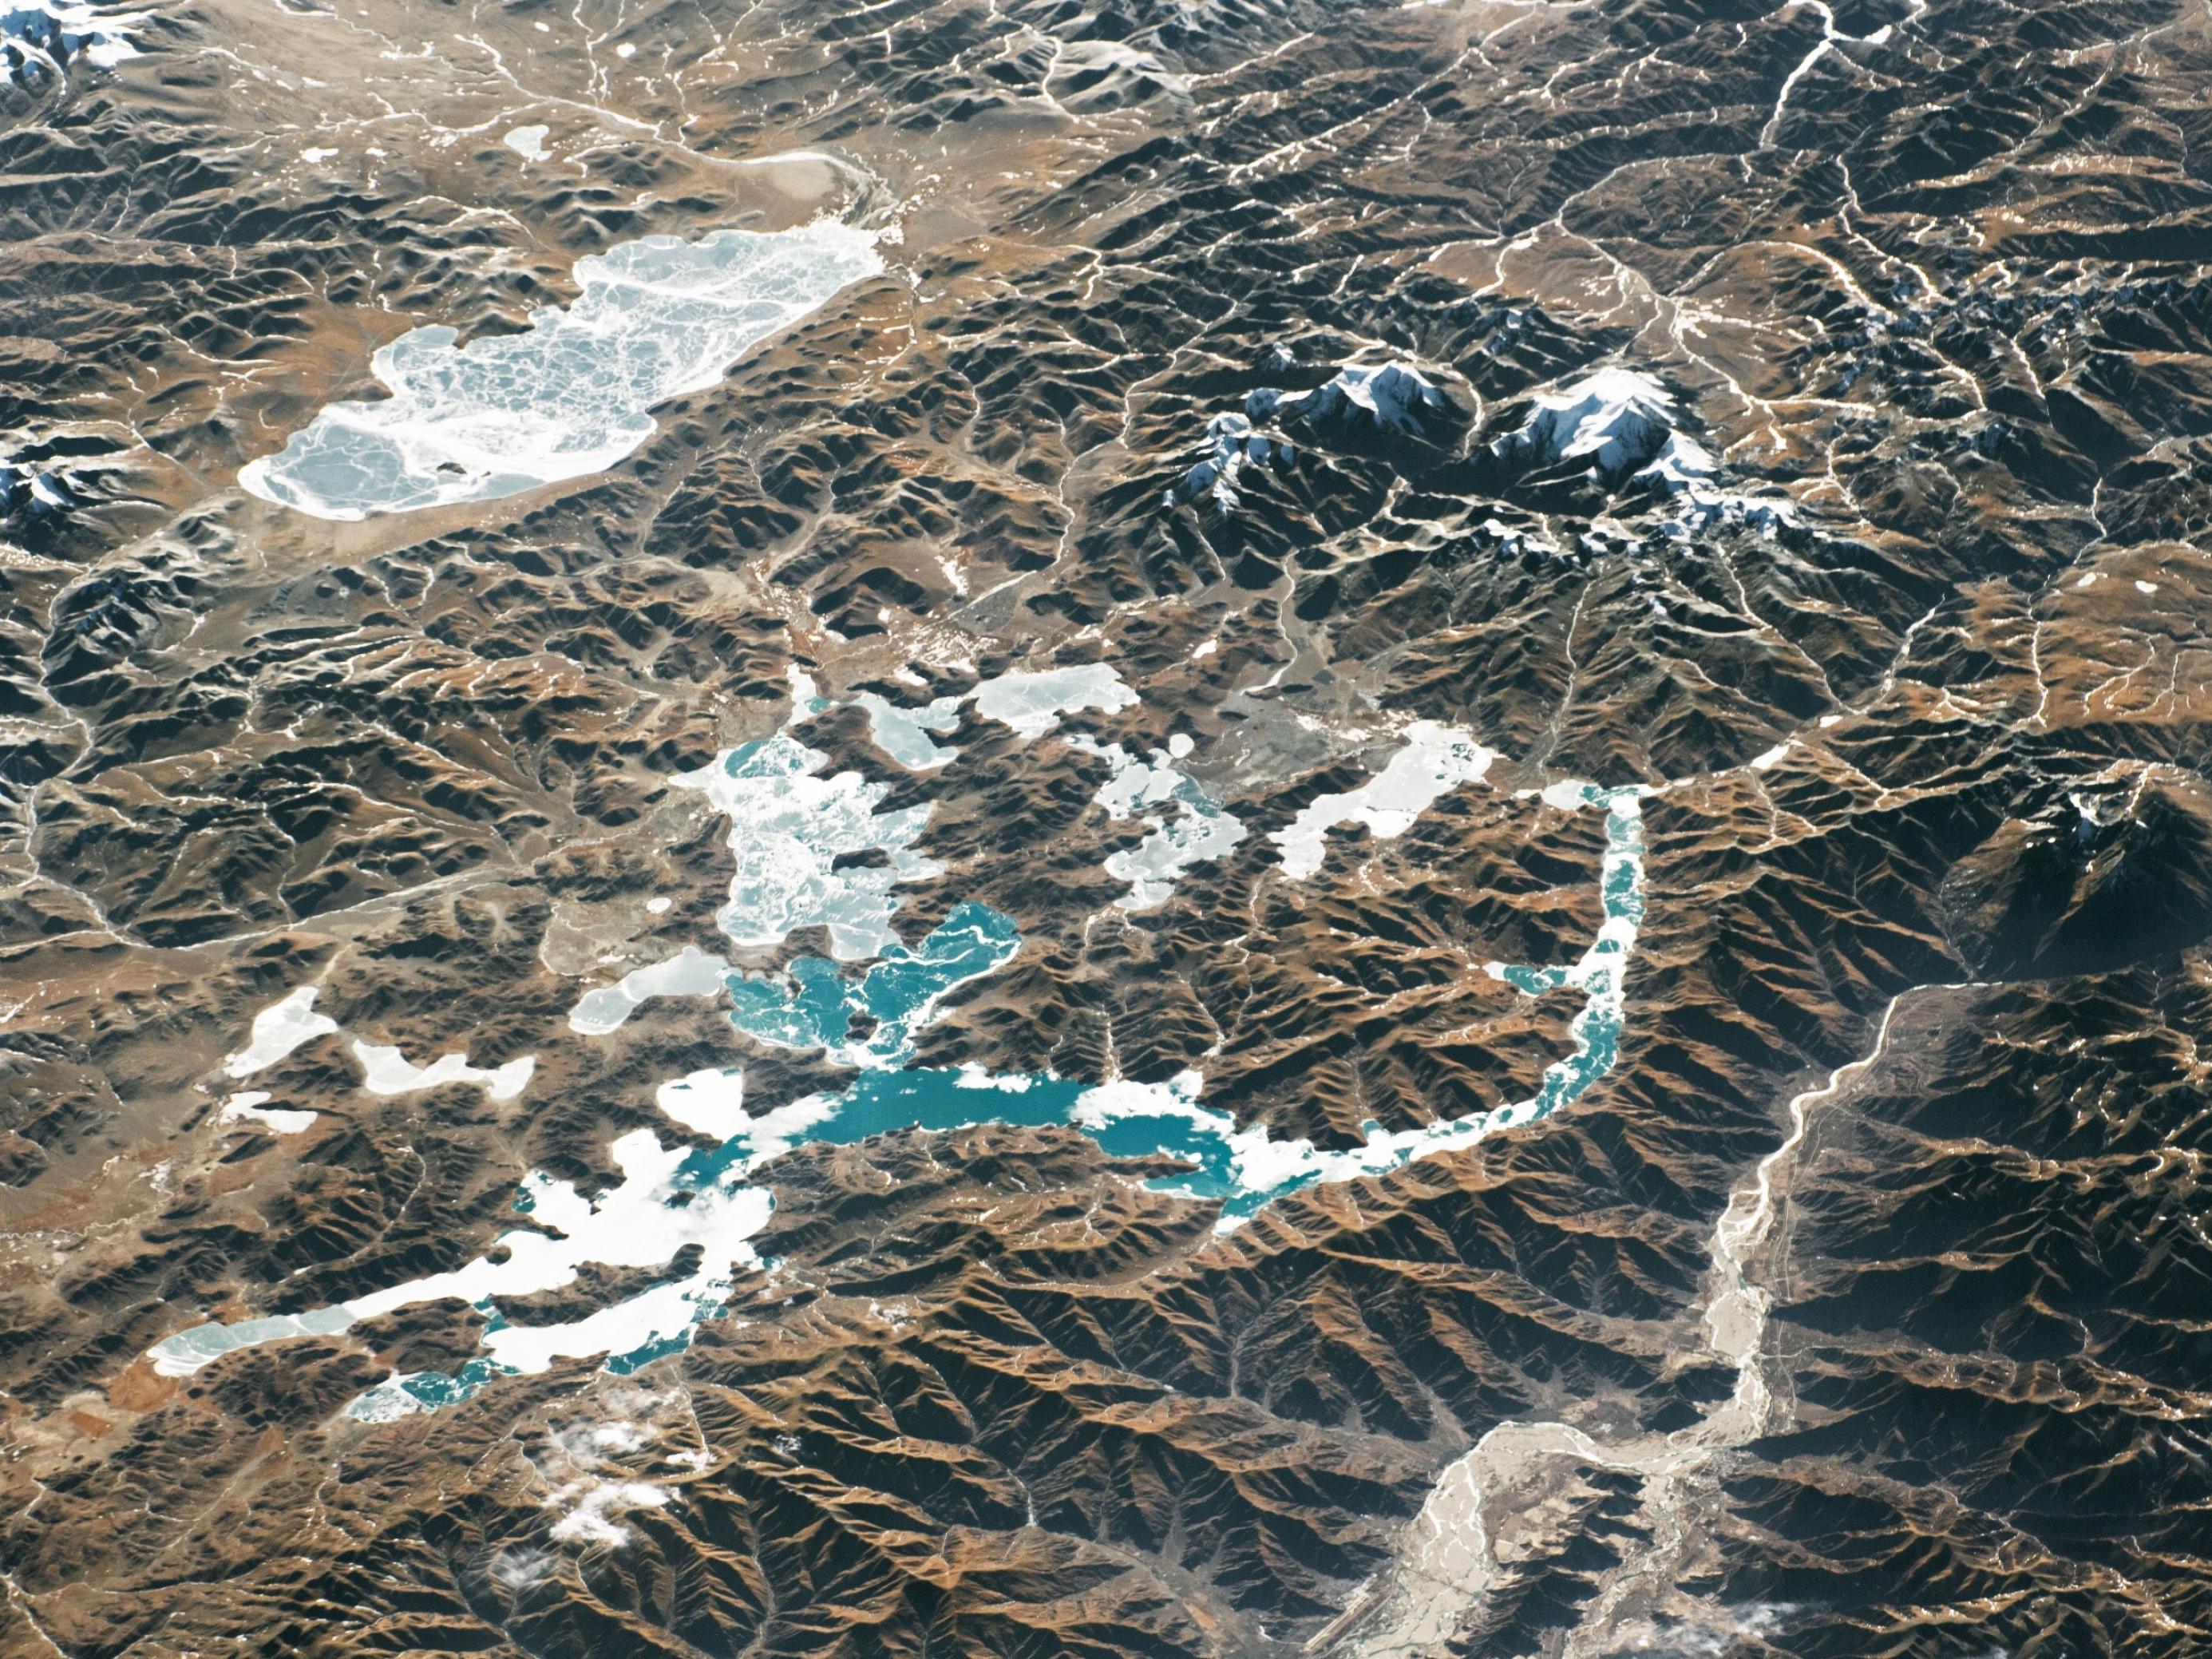 Gebirge mit gefrorenen Seen und Gletschern.